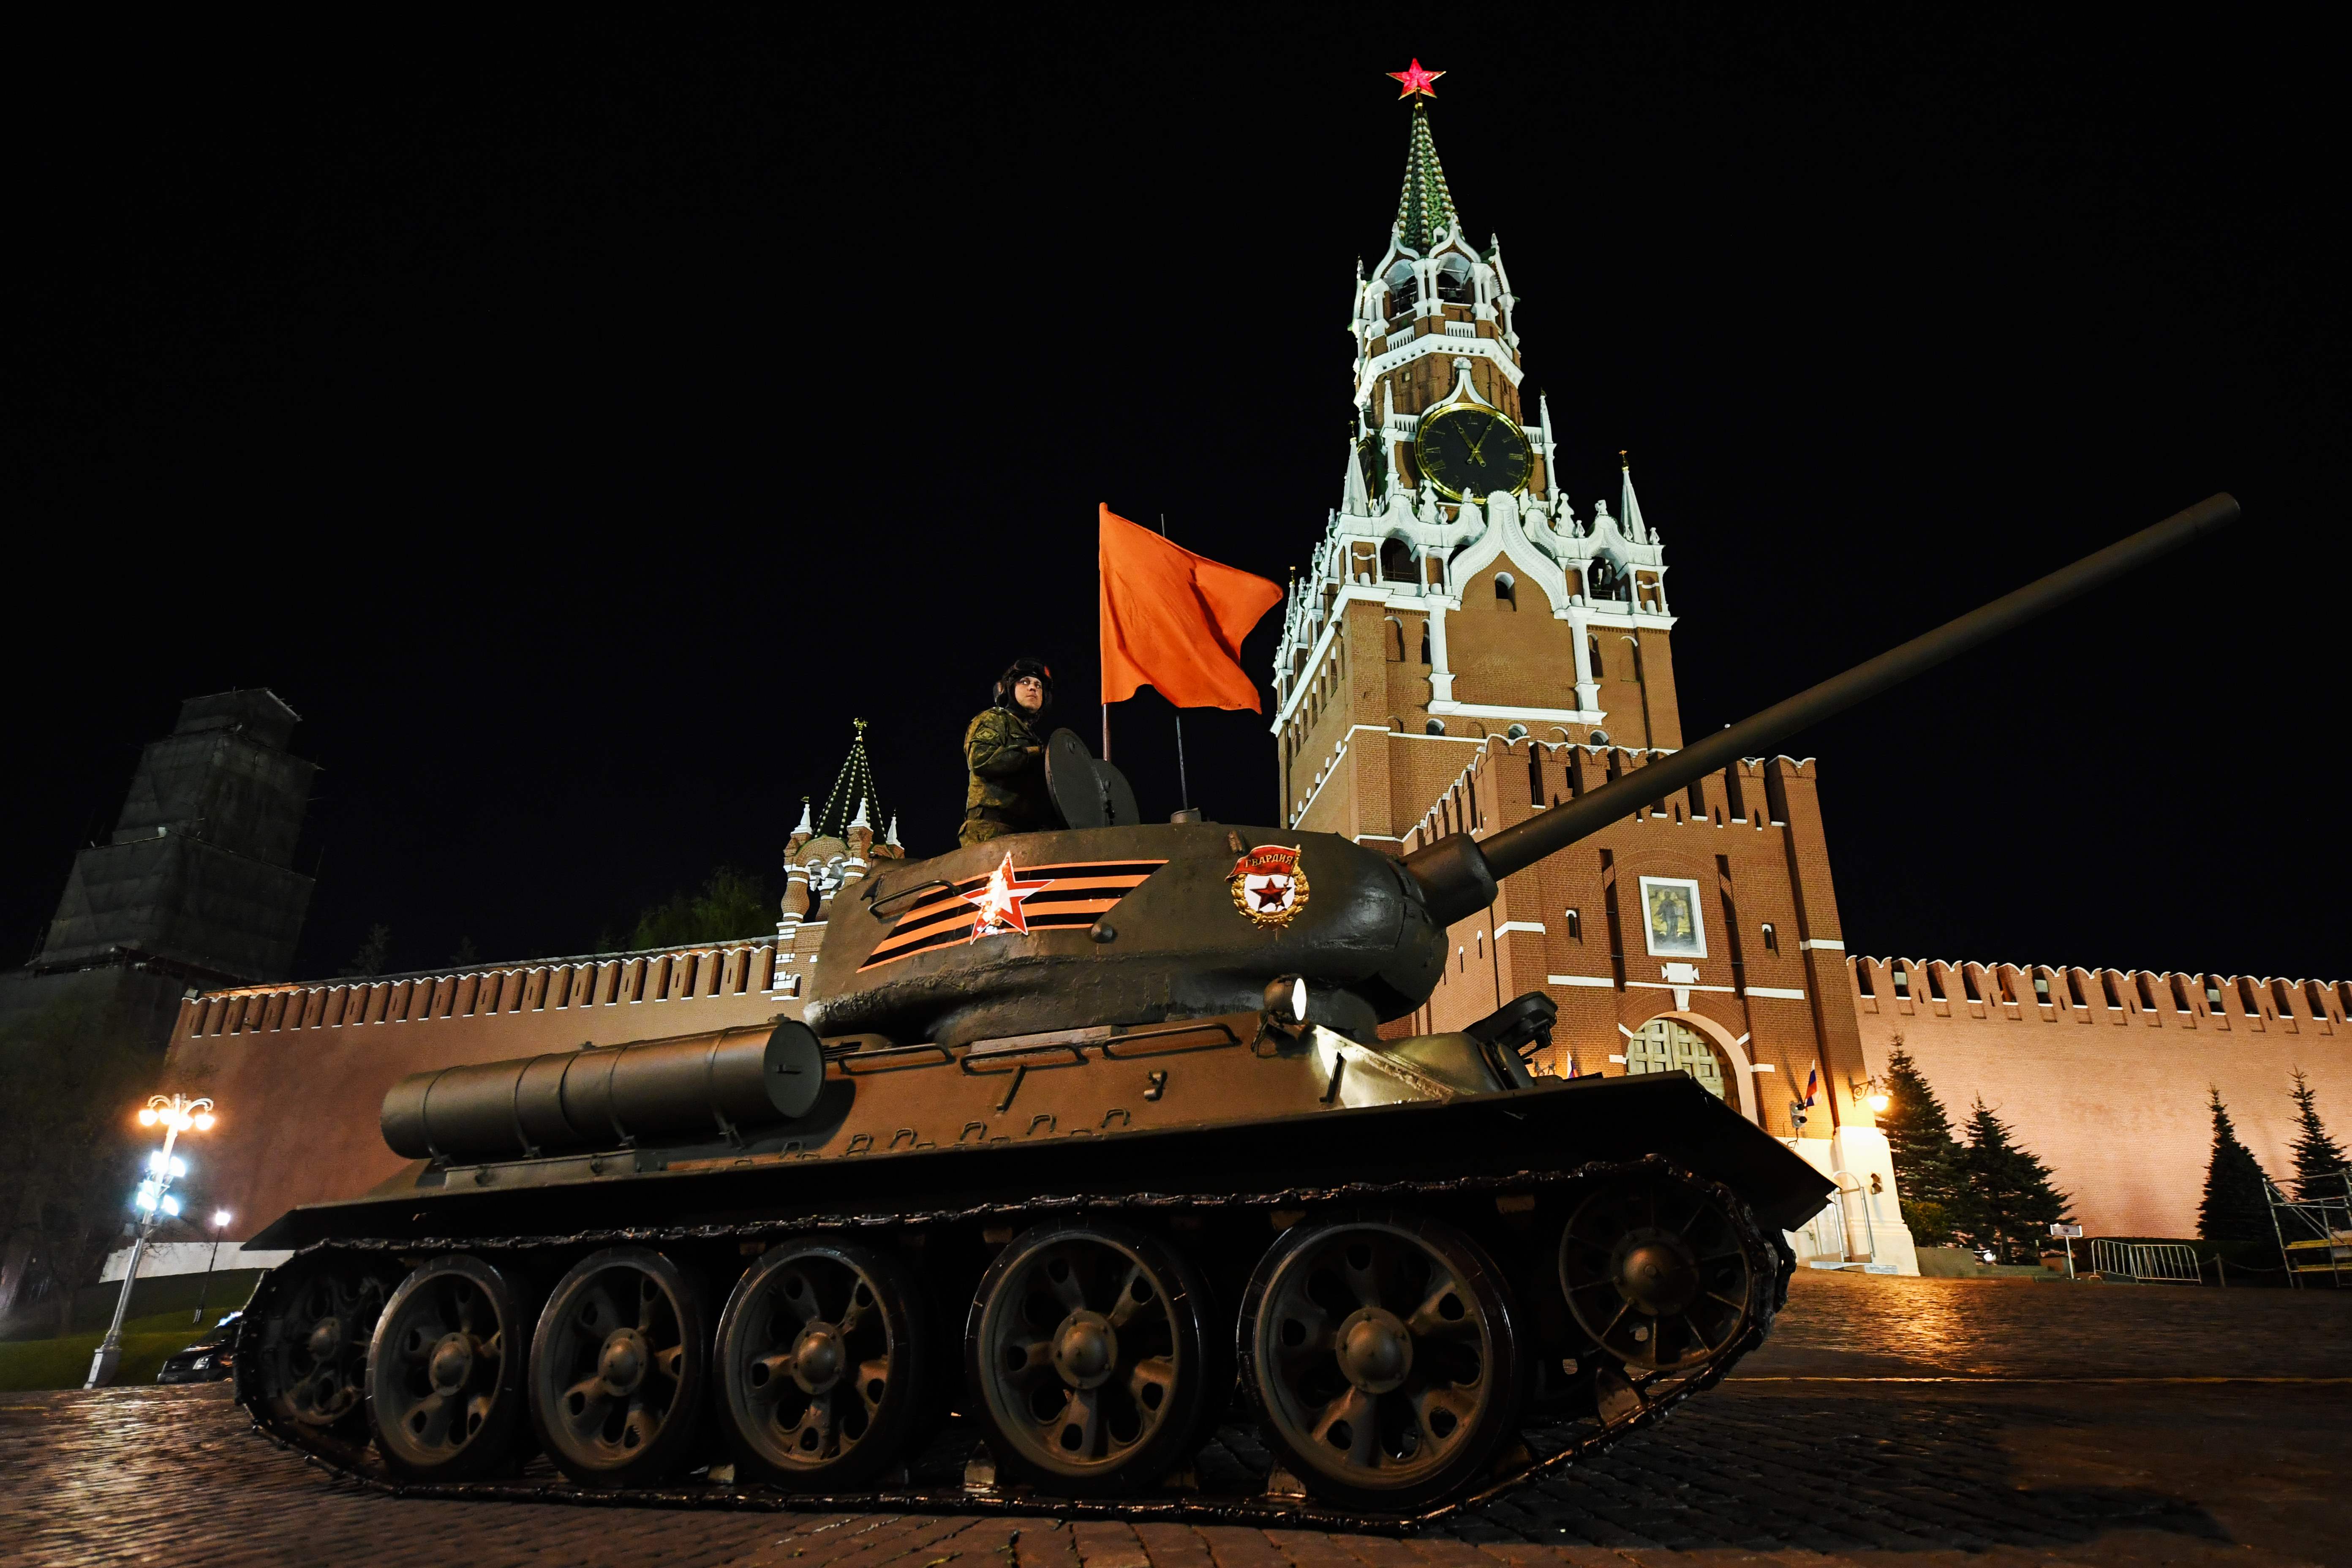 دبابة روسية تسير فى الساحة الحمراء